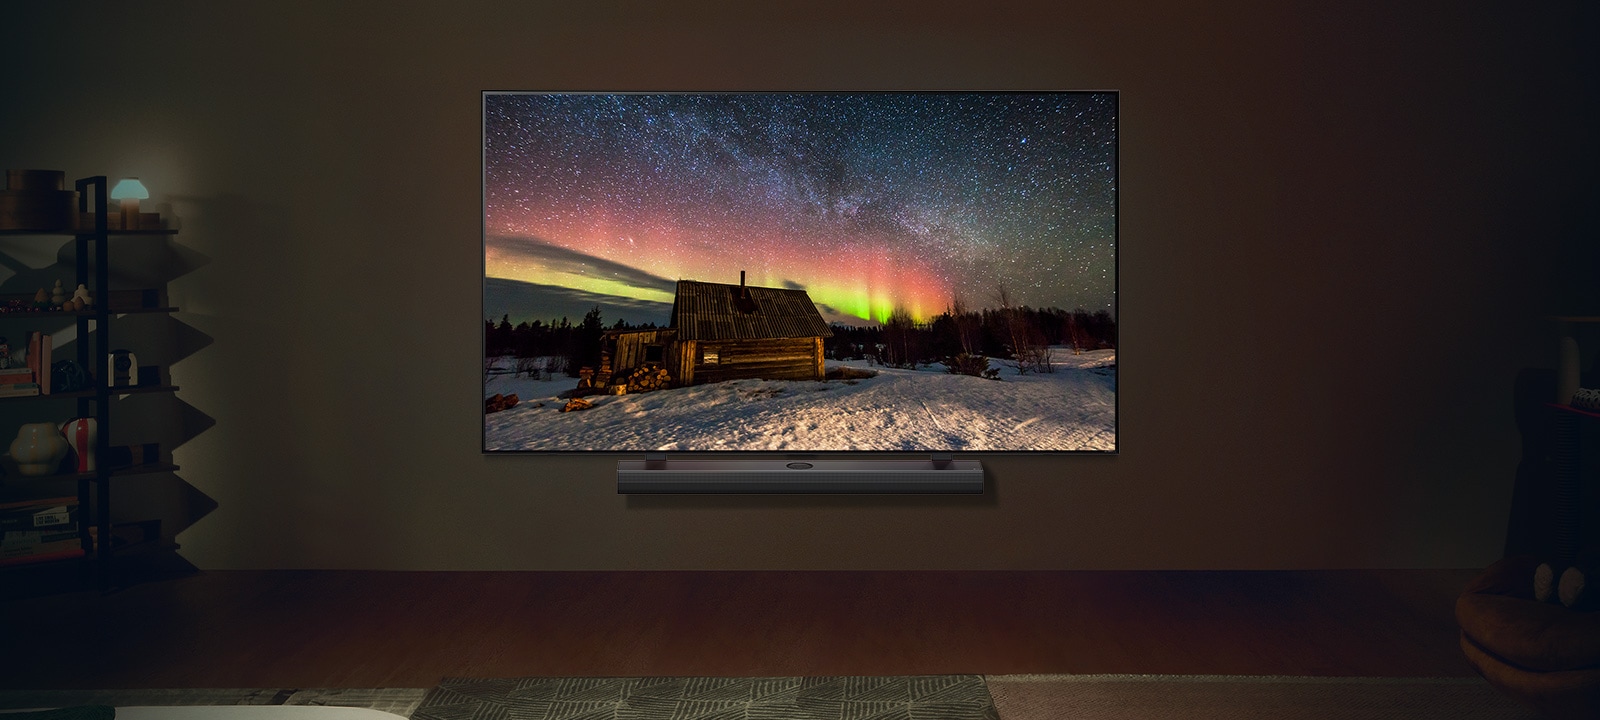 LG TV y una barra se sonido LG en un espacio moderno durante la noche. La imagen de la aurora boreal se muestra con los niveles de brillo ideales.